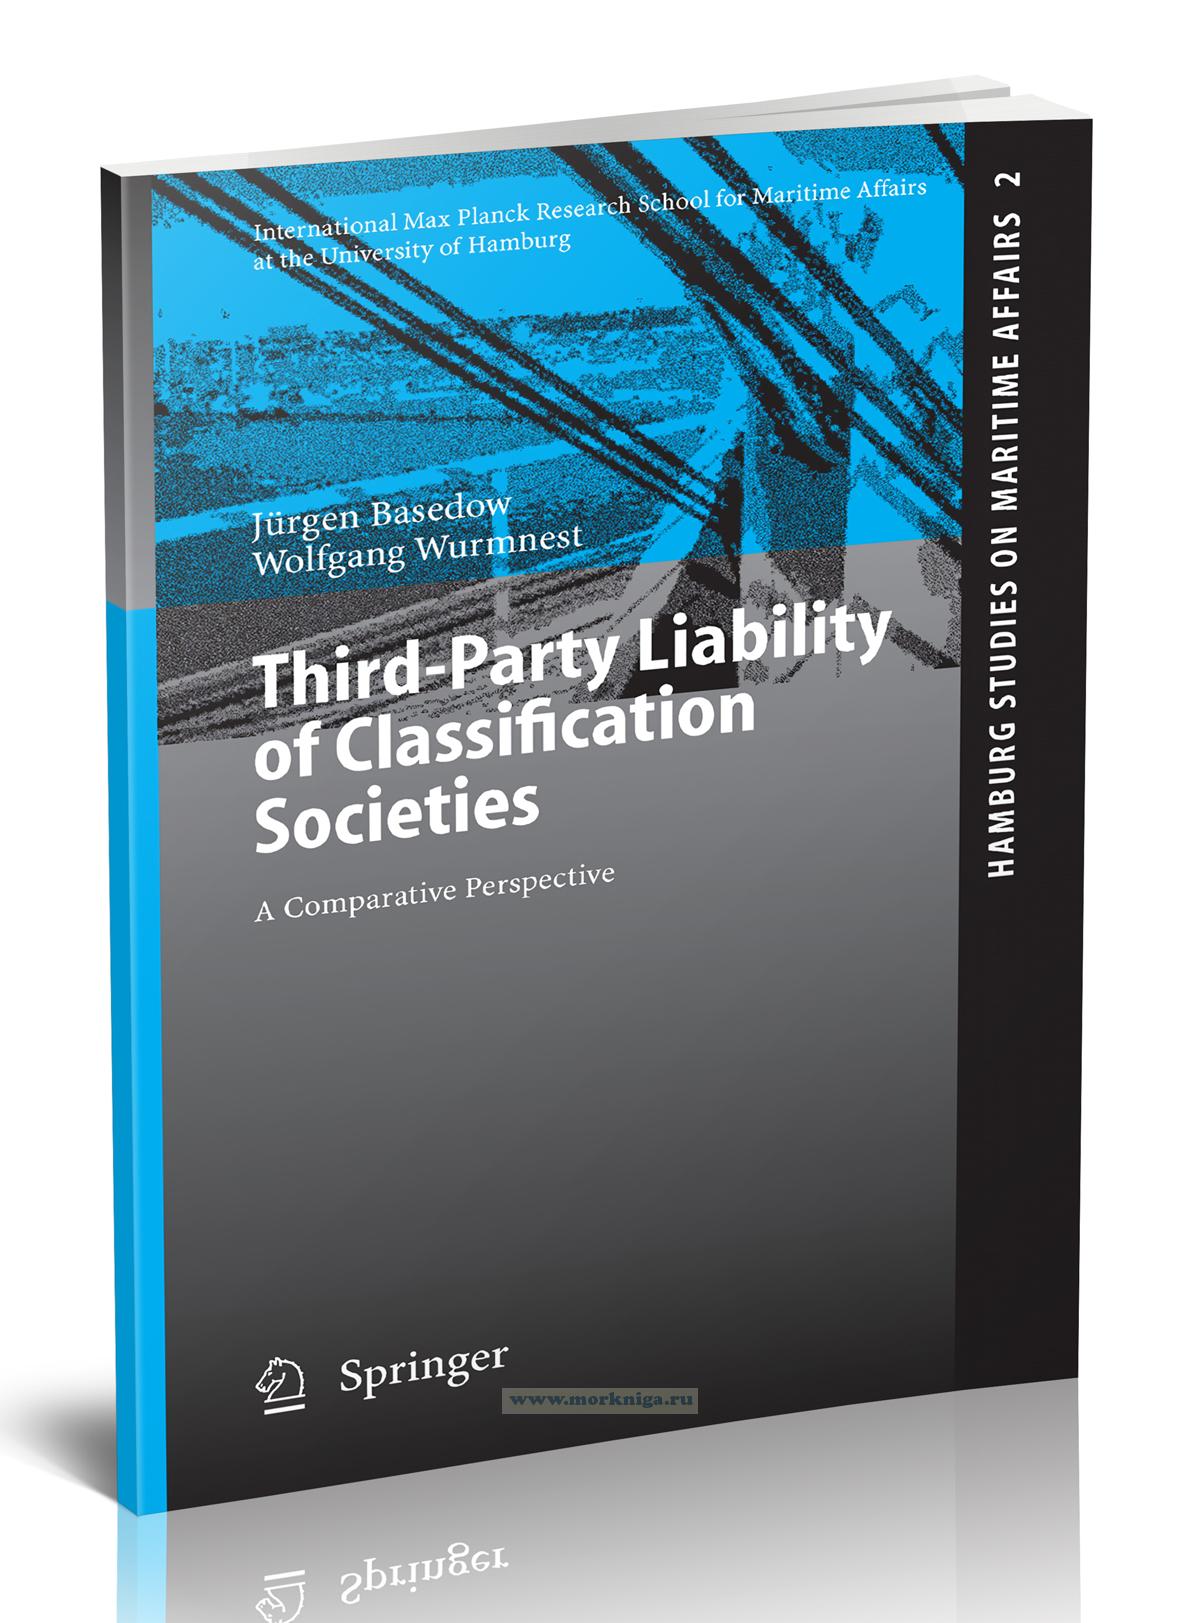 Third-Party Liability of Classification Societies. A Comparative Perspective/Ответственность классификационных обществ перед третьими лицами. Сравнительная перспектива